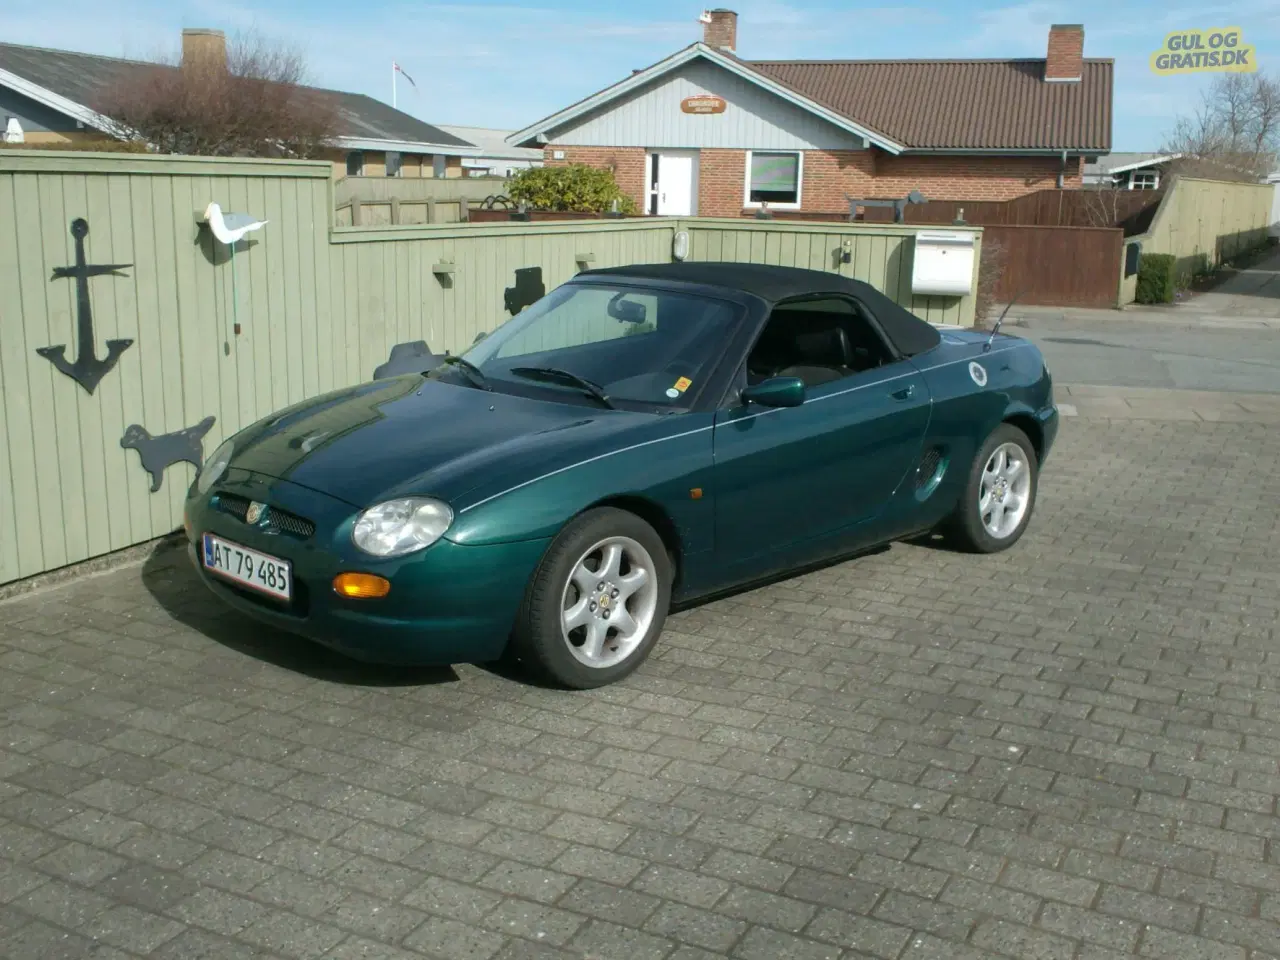 Billede 1 - Velholdt MG F fra 1997 sælges.